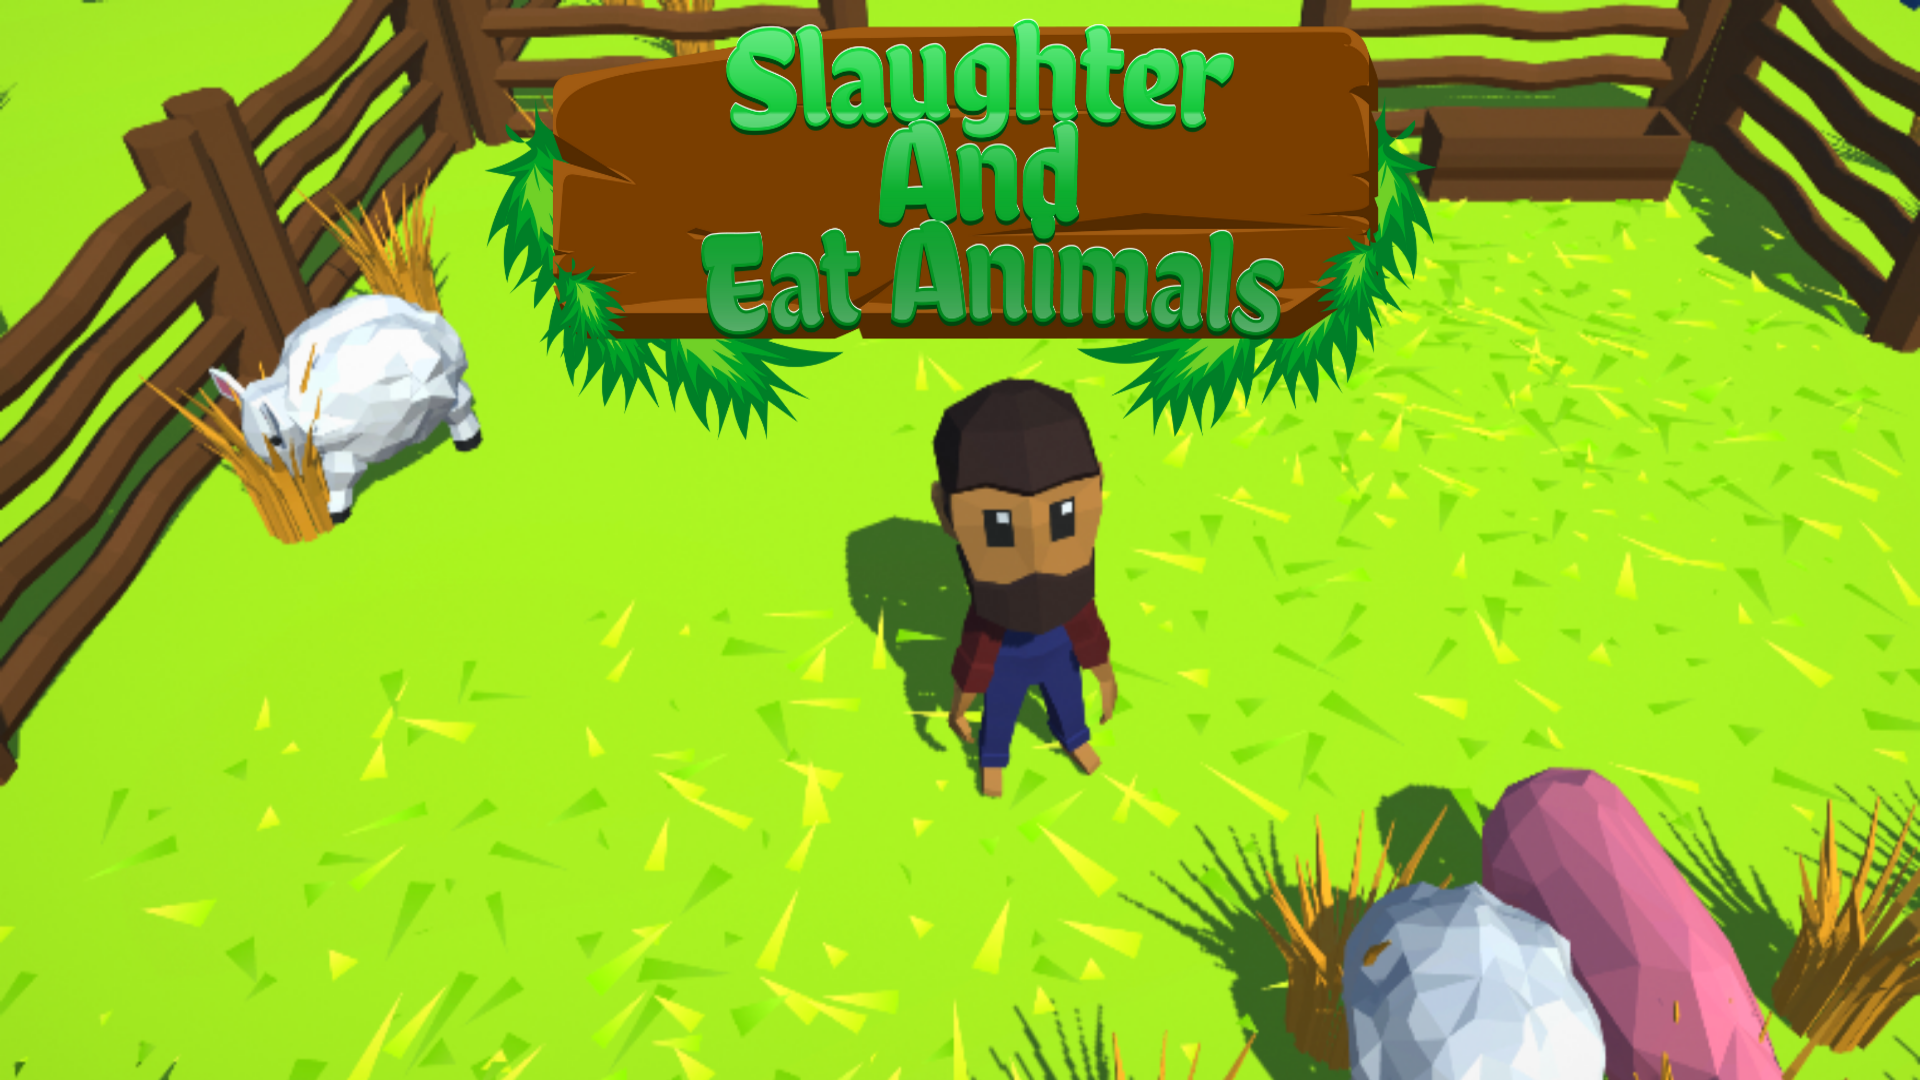 Crazy Farming Simulation screenshot game